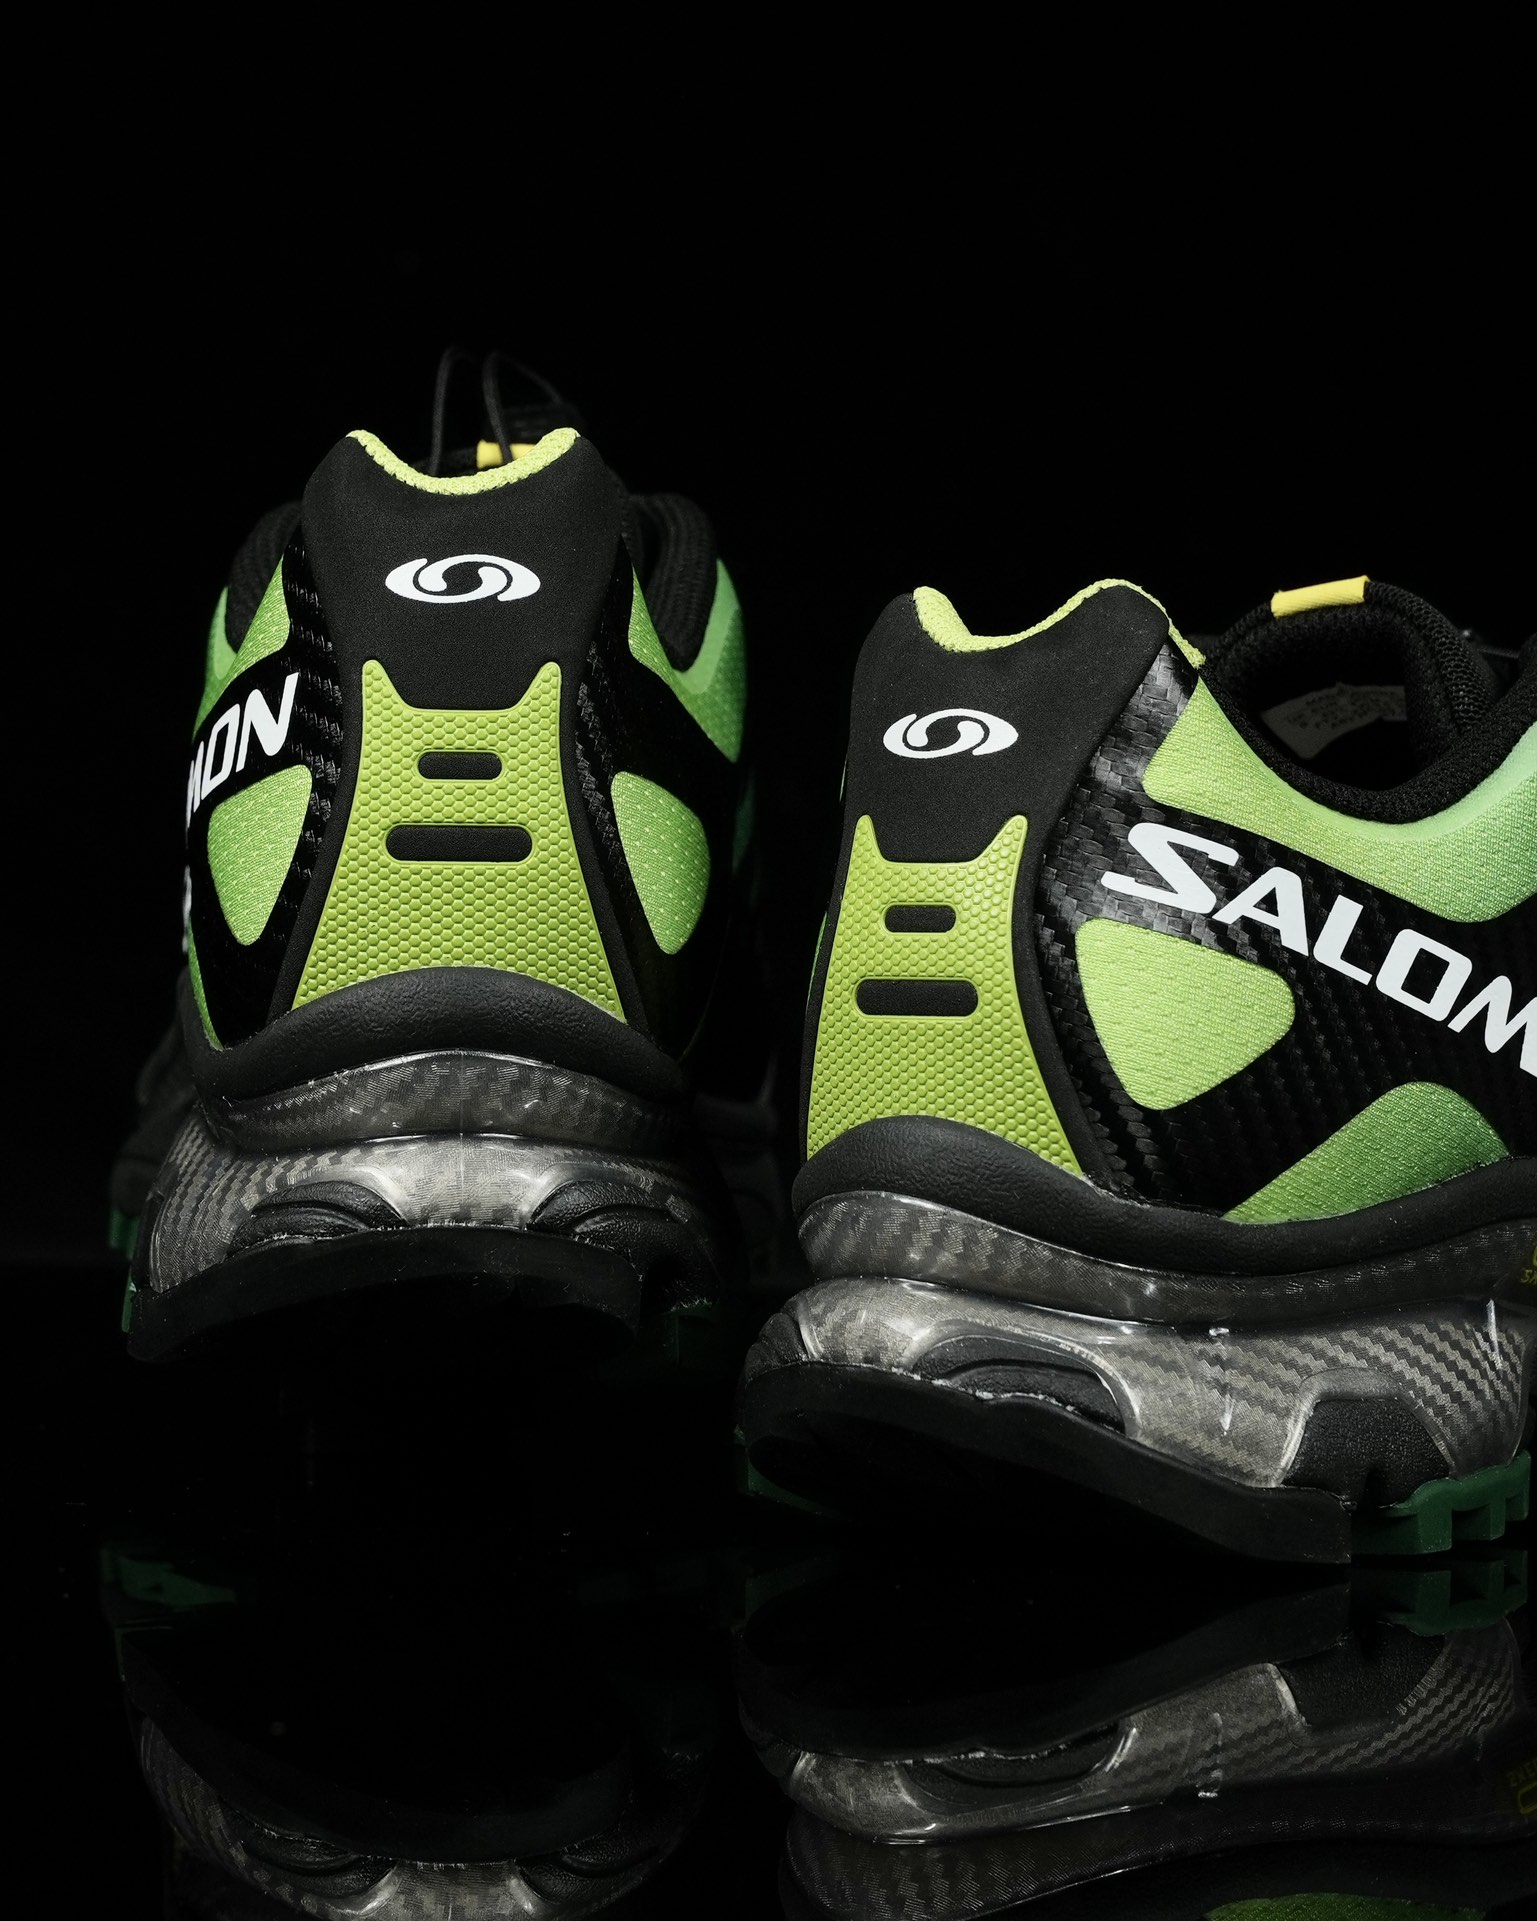 SalomonXT-4OG萨洛蒙高科技户外休闲跑鞋471332鞋身采用耐磨TPU和网眼材质打造让鞋子更轻